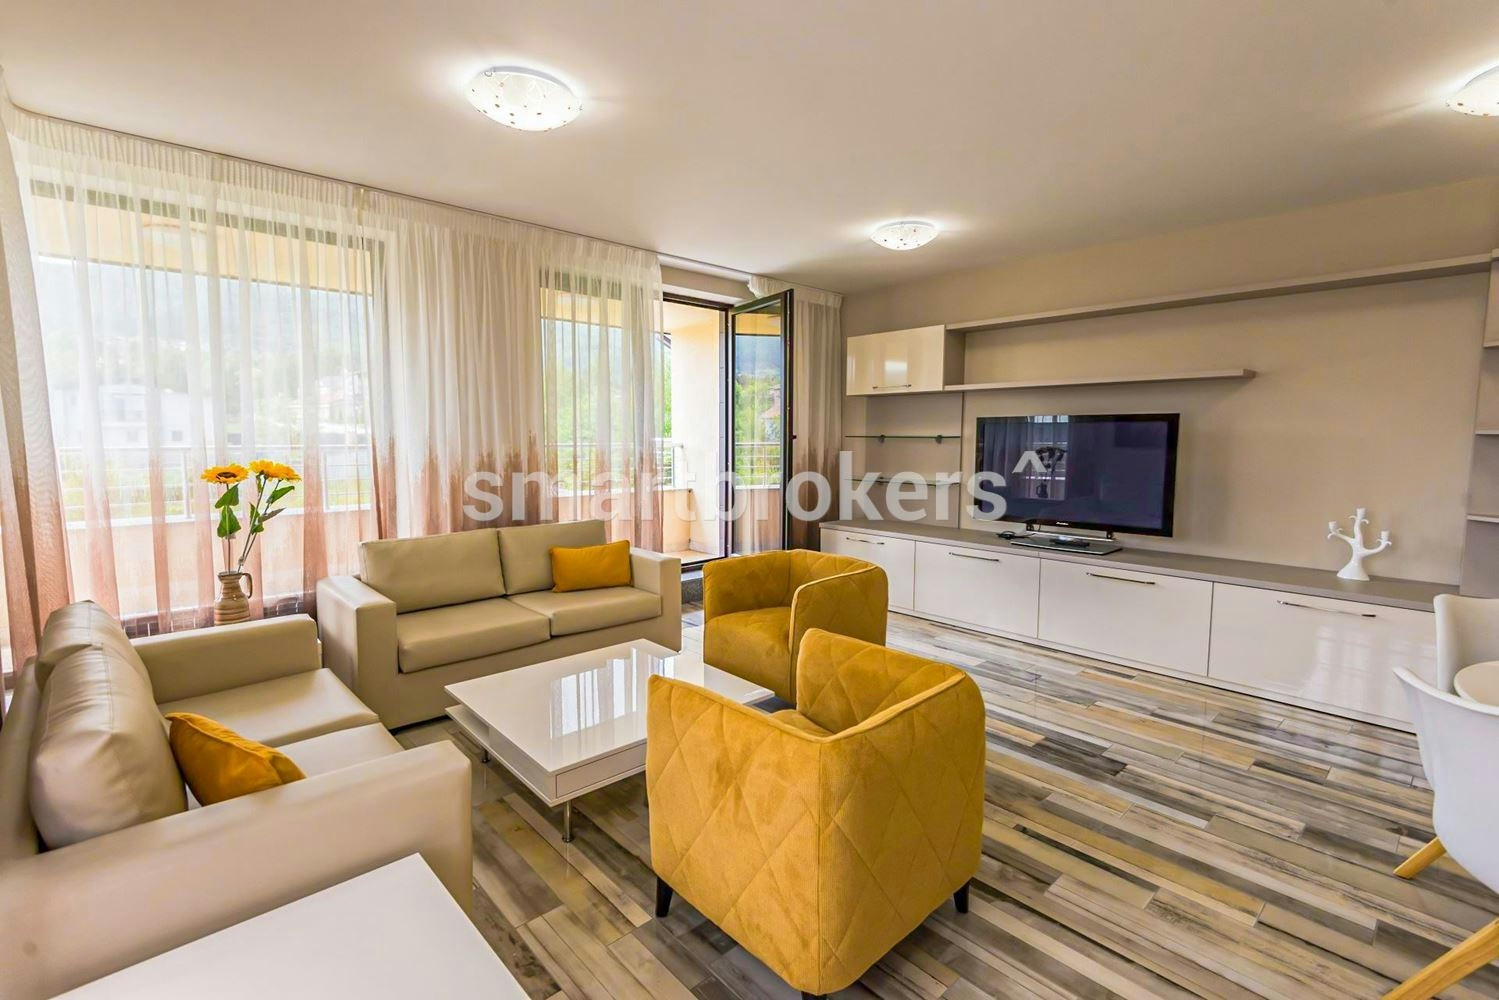 Луксозно обзаведен тристаен апартамент за продажба в Симеоново